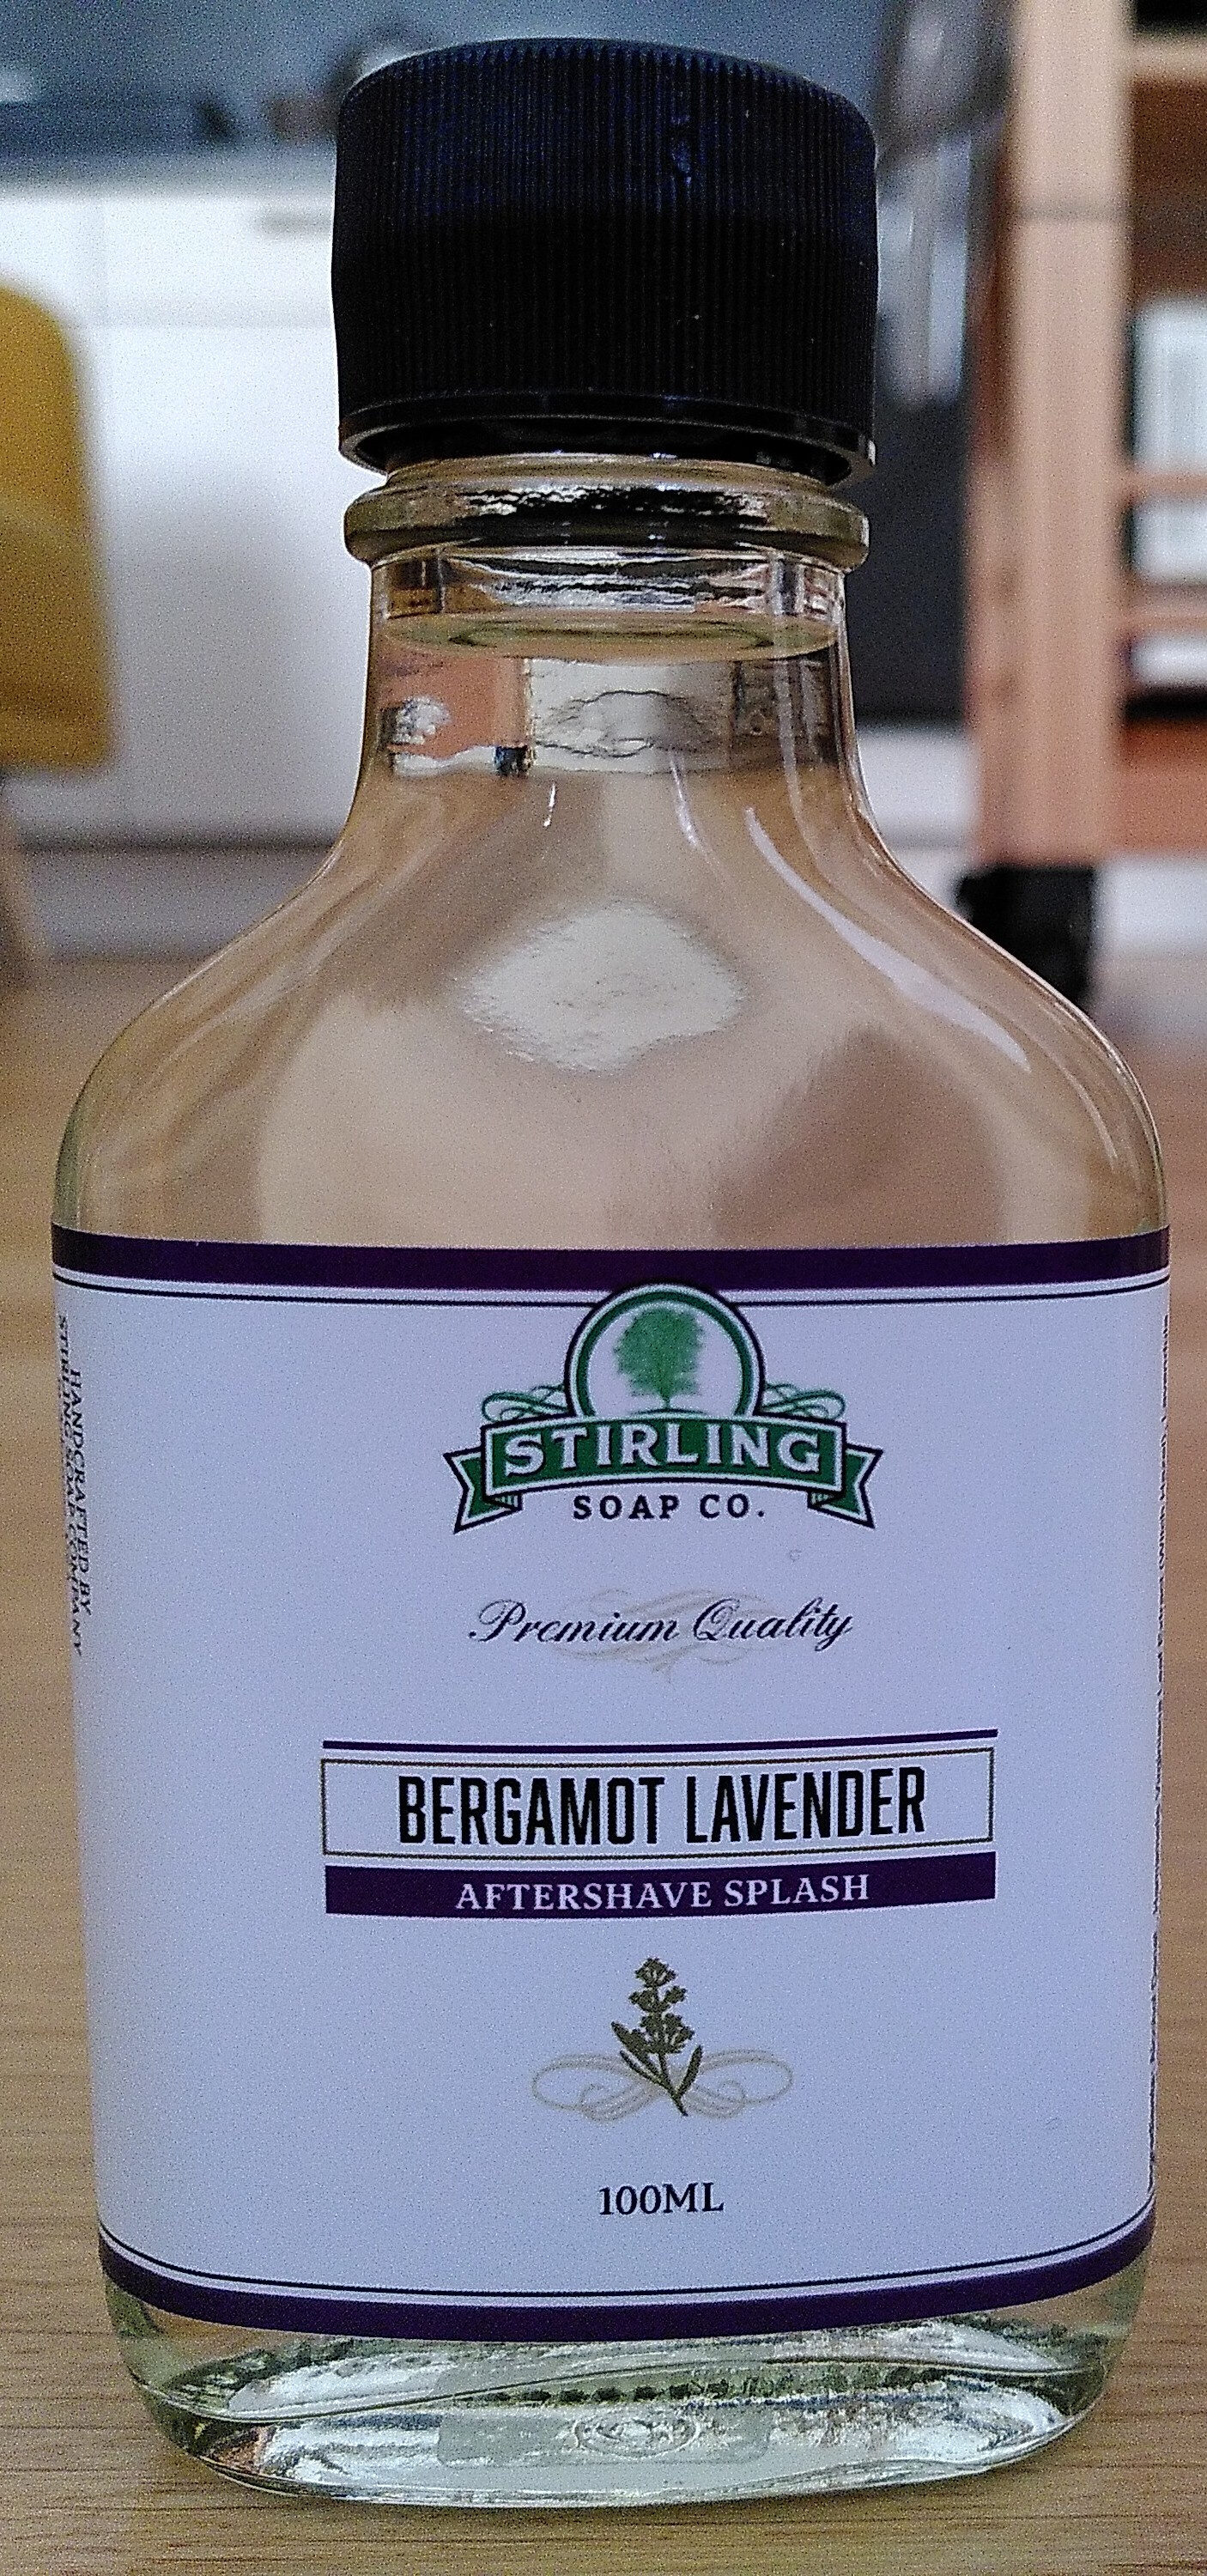 Bergamot Lavender Aftershave Splash - Product - en